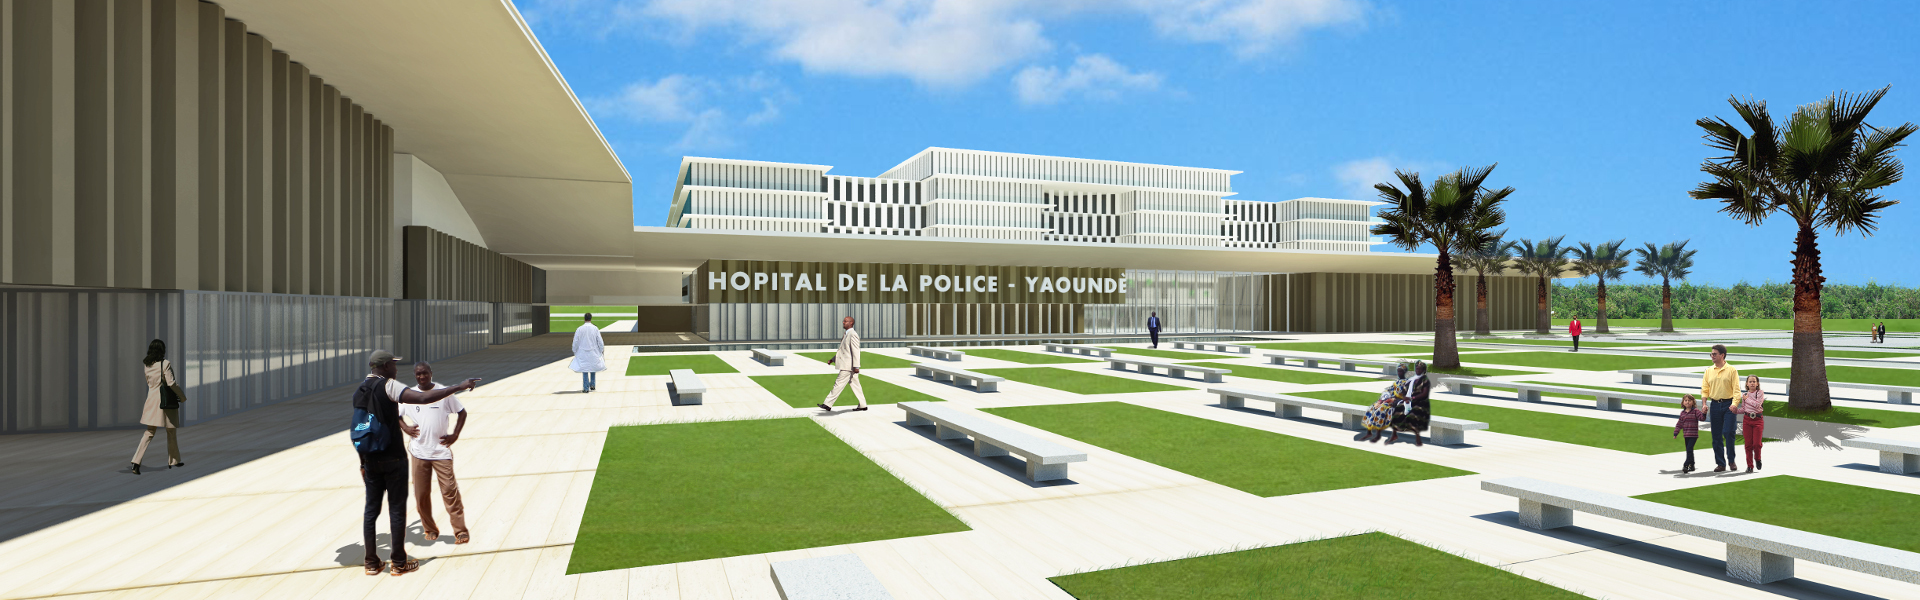 Hopital De La Police Camerun